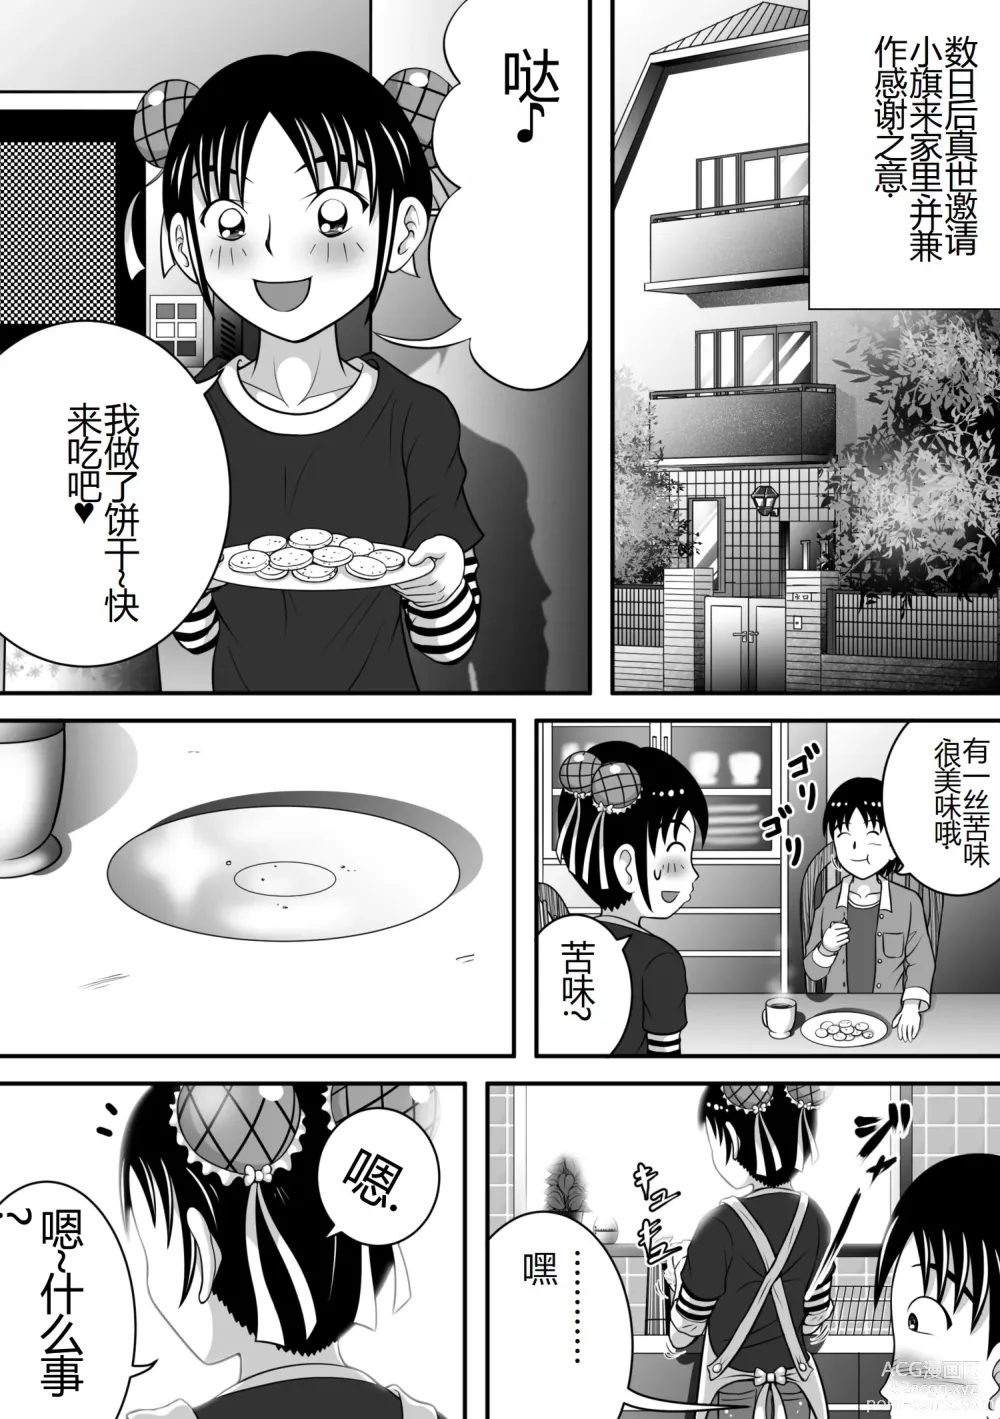 Page 29 of doujinshi 报告老师,我憋不住了